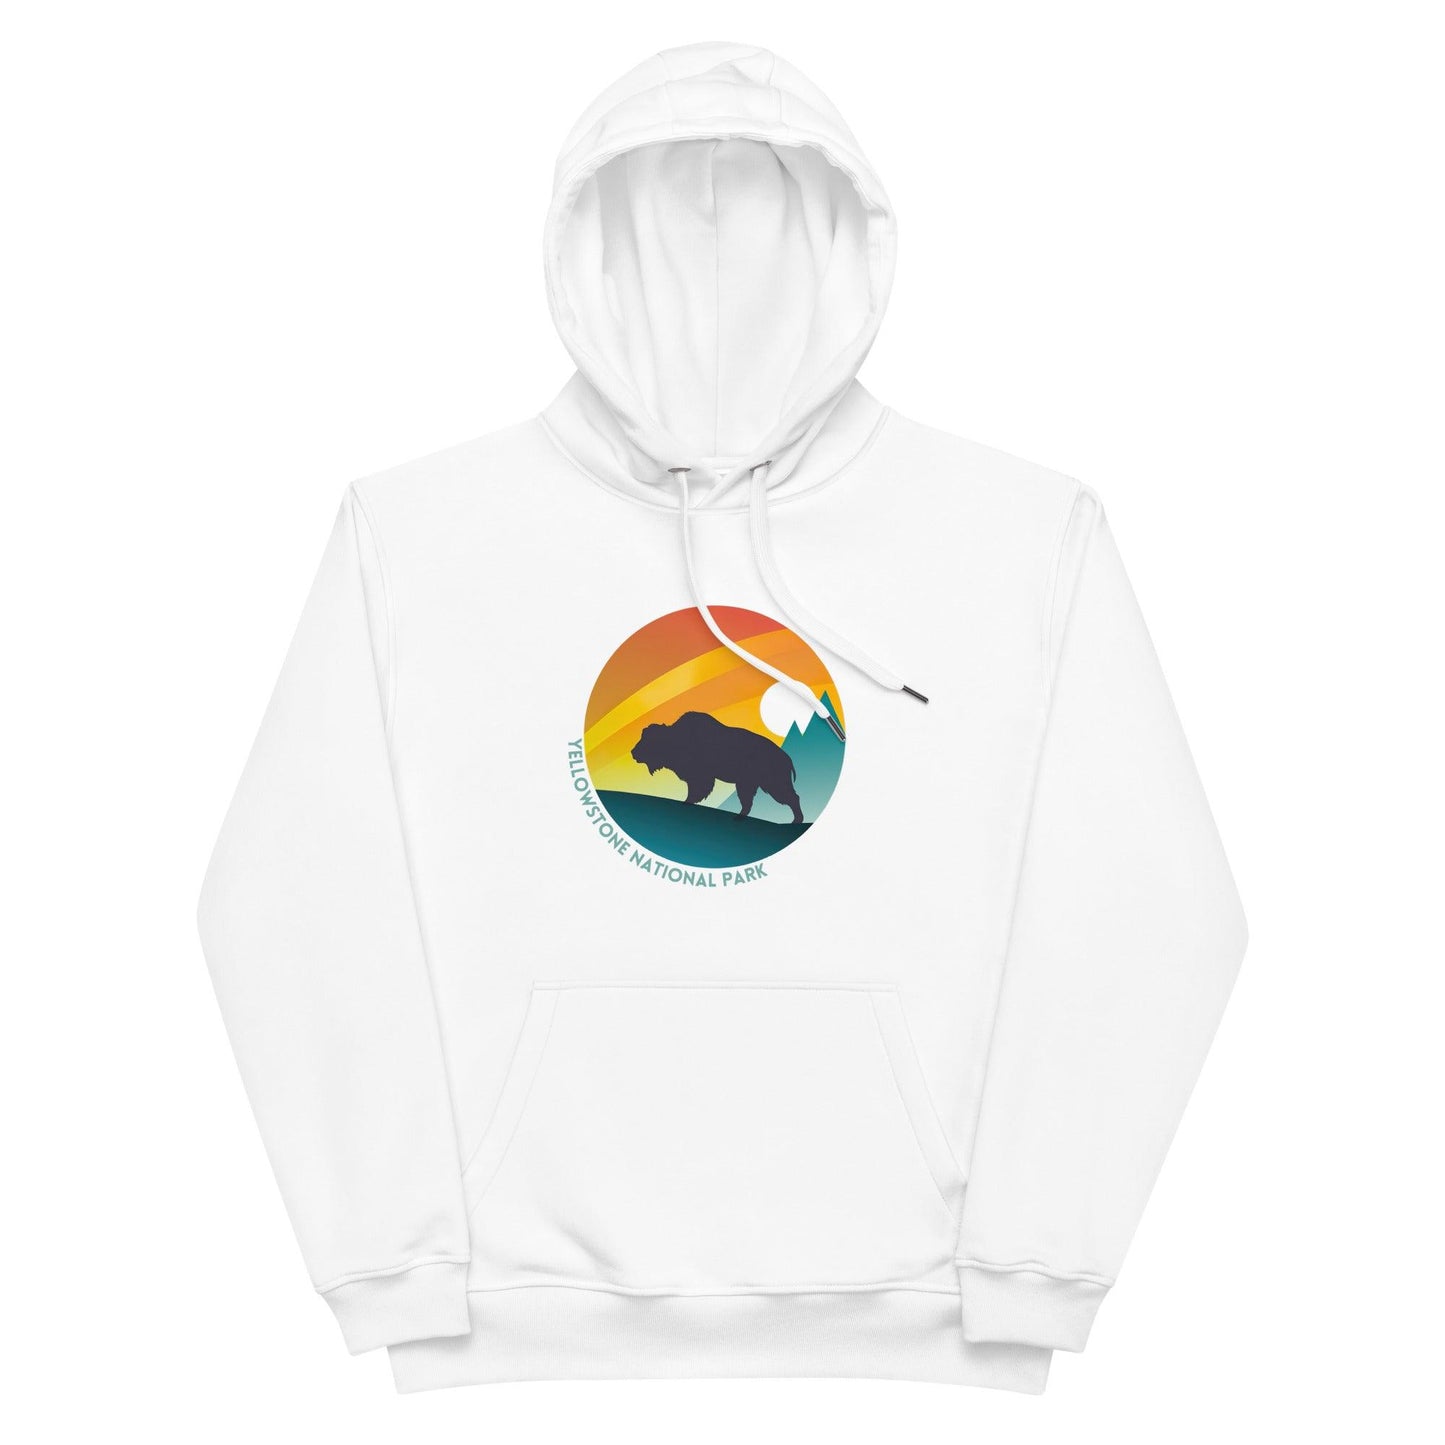 Yellowstone hoodie